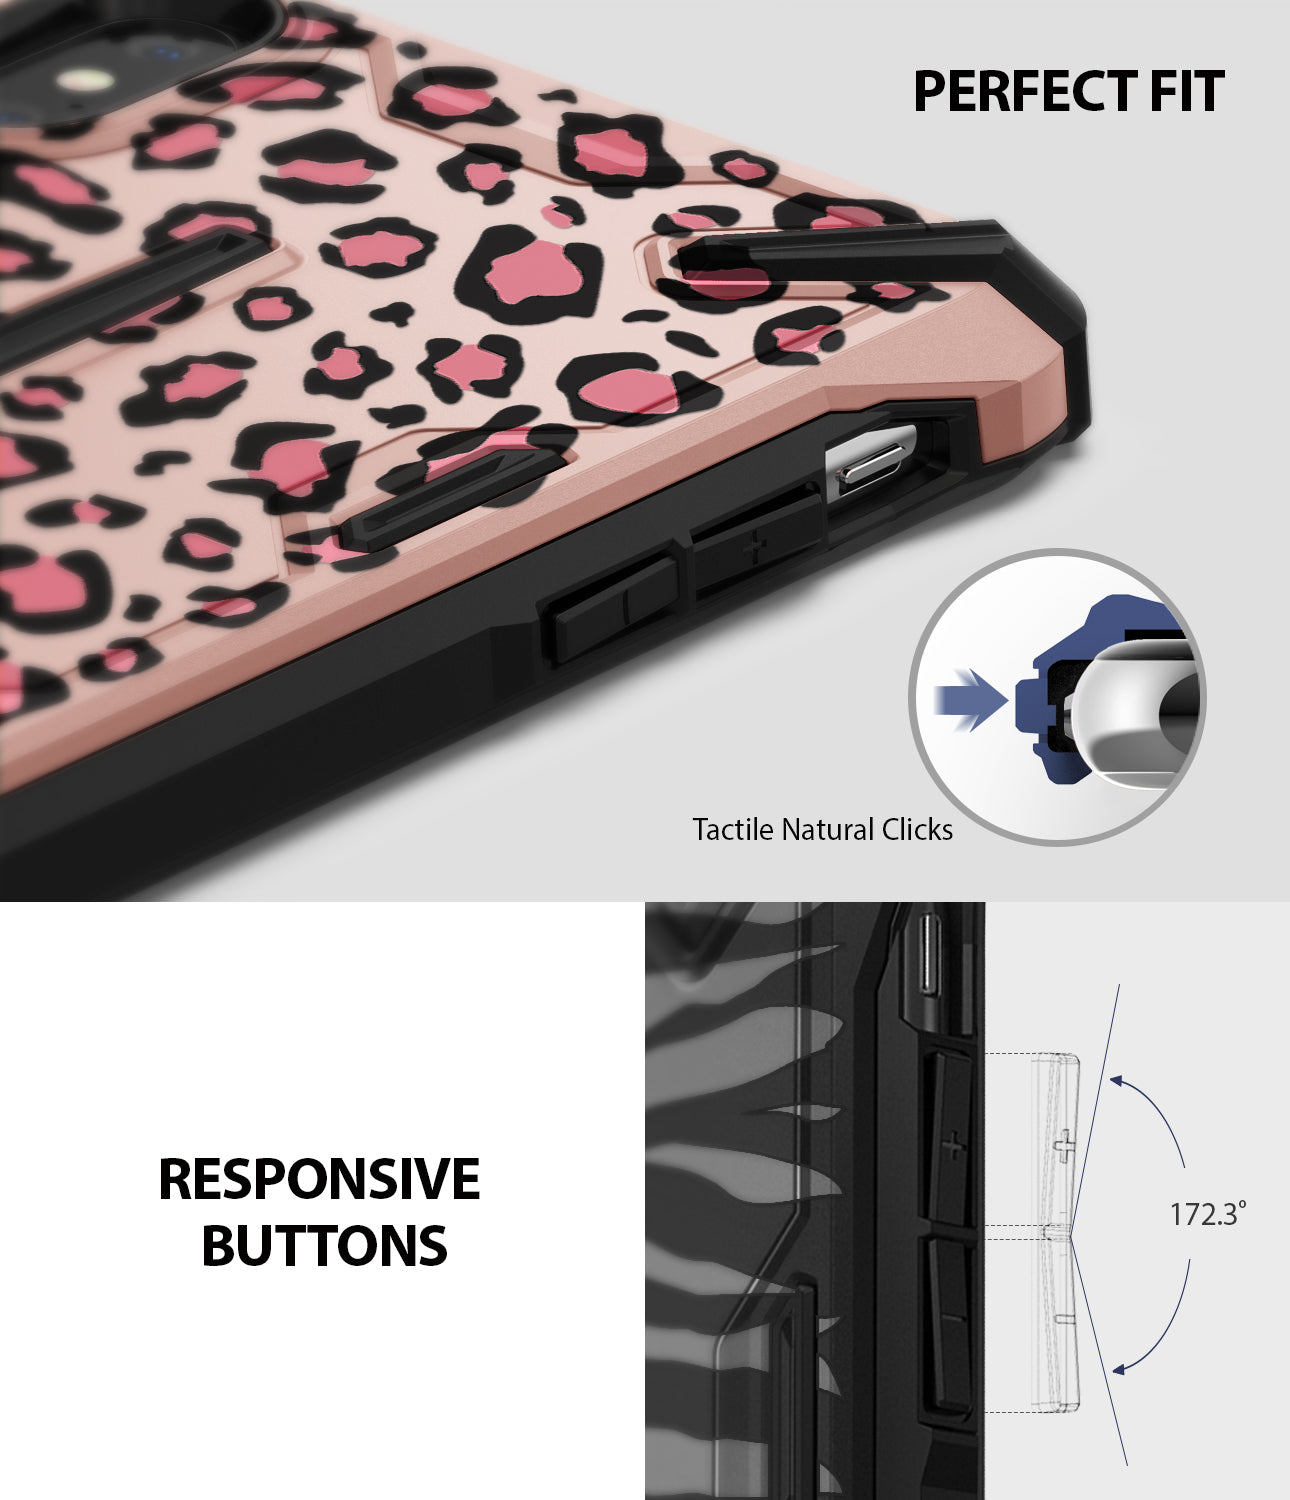 iPhone XS Max Case | Dual-X Design